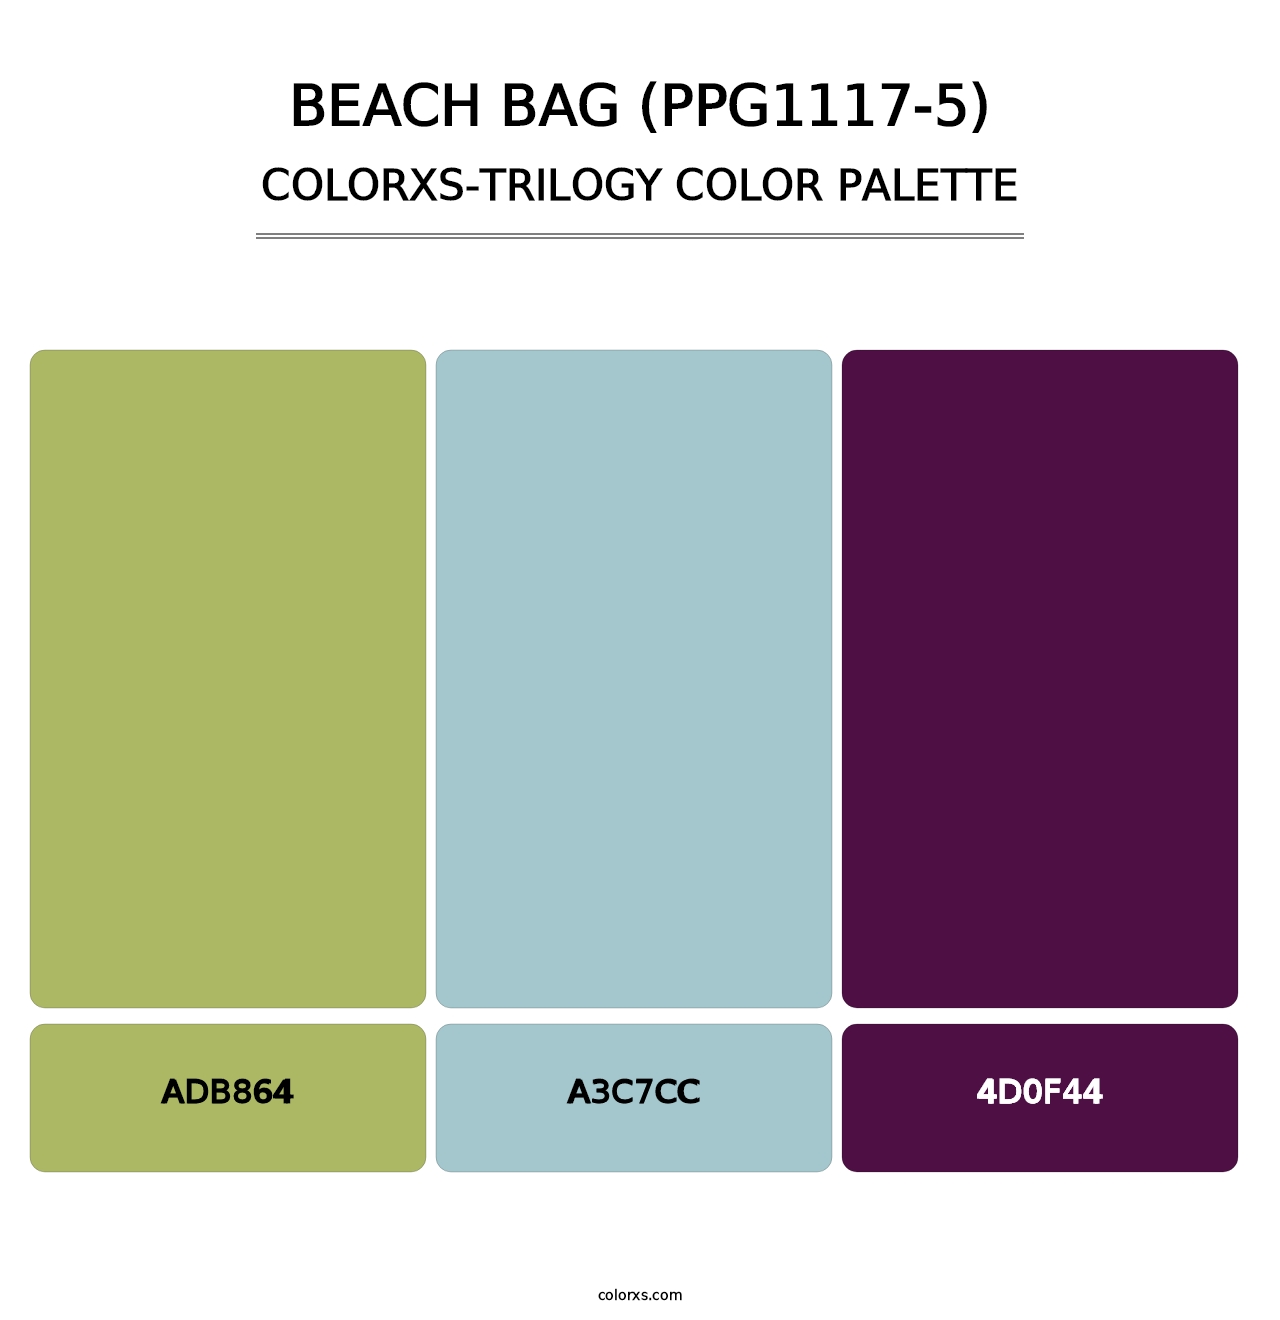 Beach Bag (PPG1117-5) - Colorxs Trilogy Palette